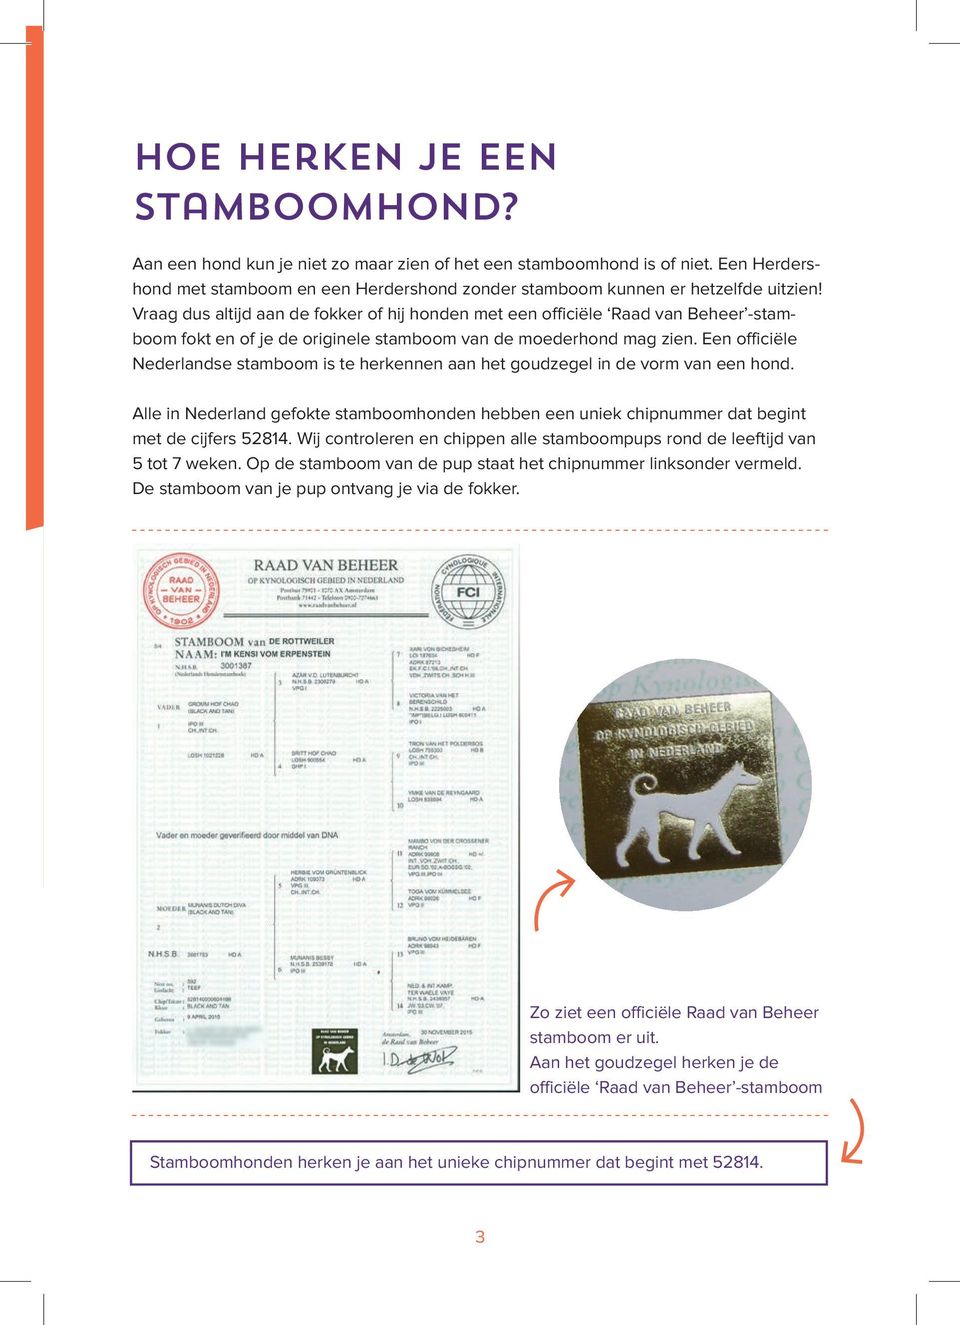 Een officiële Nederlandse stamboom is te herkennen aan het goudzegel in de vorm van een hond. Alle in Nederland gefokte stamboomhonden hebben een uniek chipnummer dat begint met de cijfers 52814.